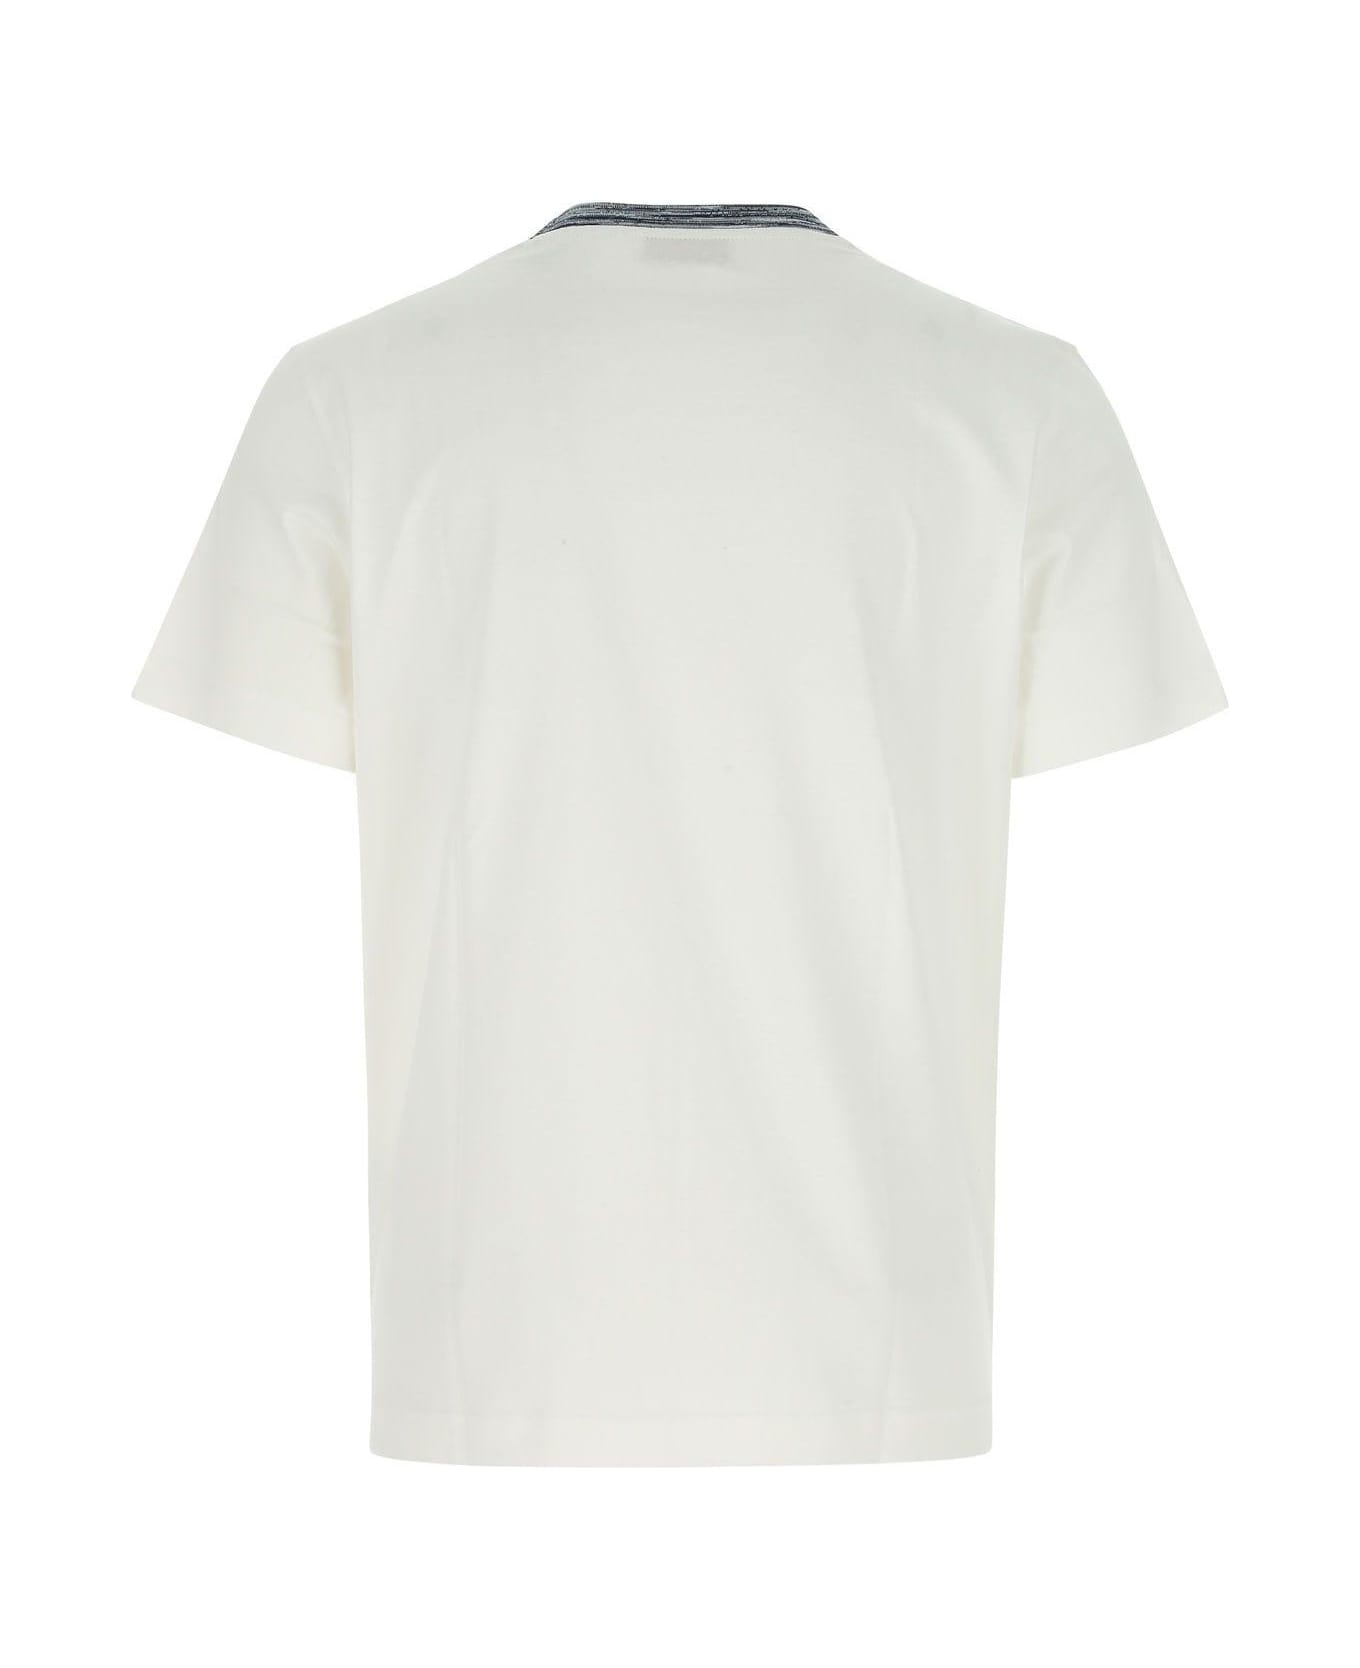 Missoni White Cotton T-shirt - Bianco